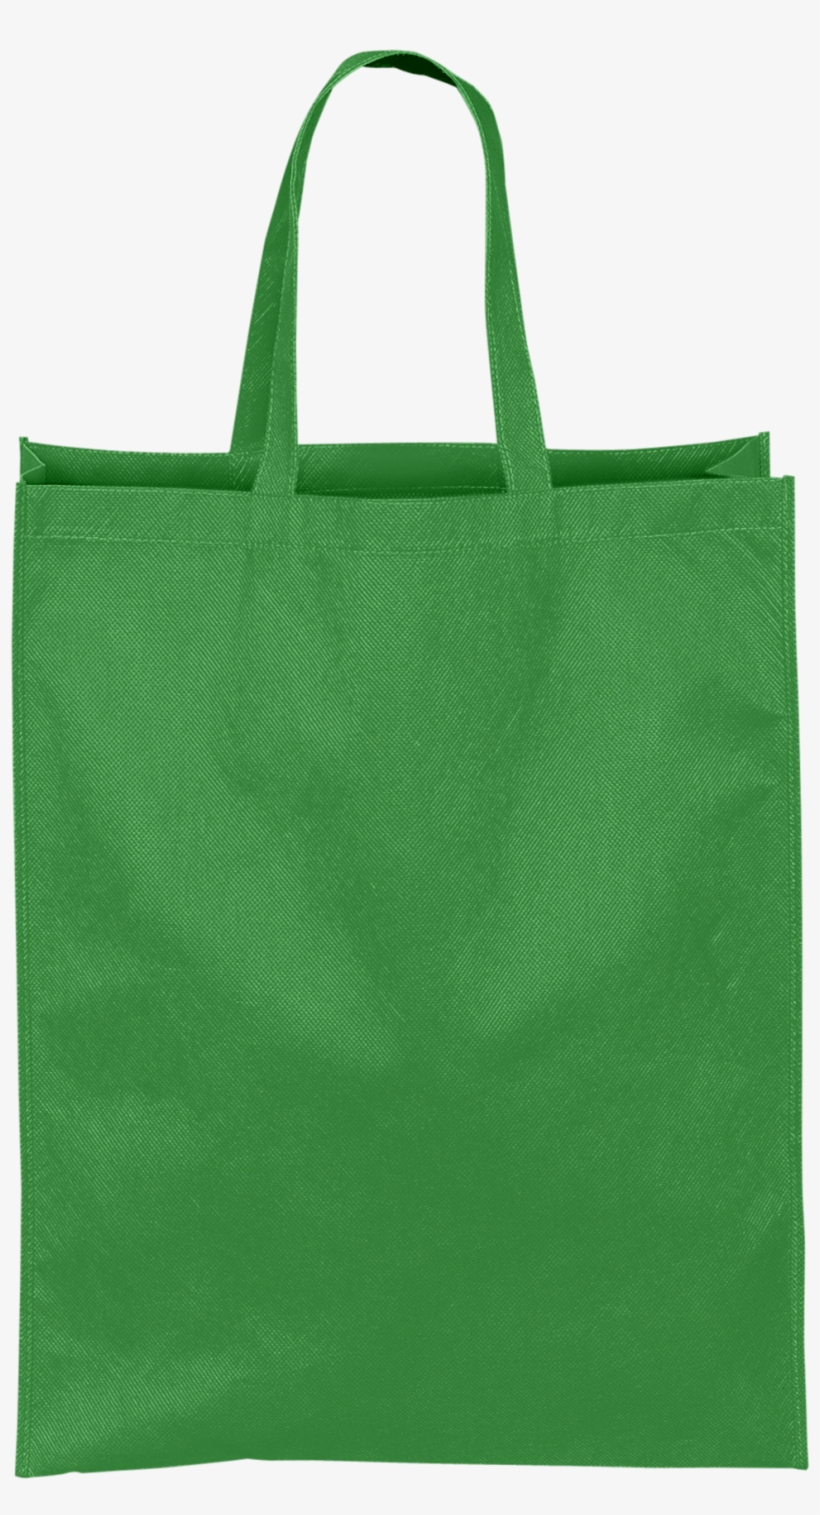 Eco Bag - Eco Bag Png Green, transparent png #8324936